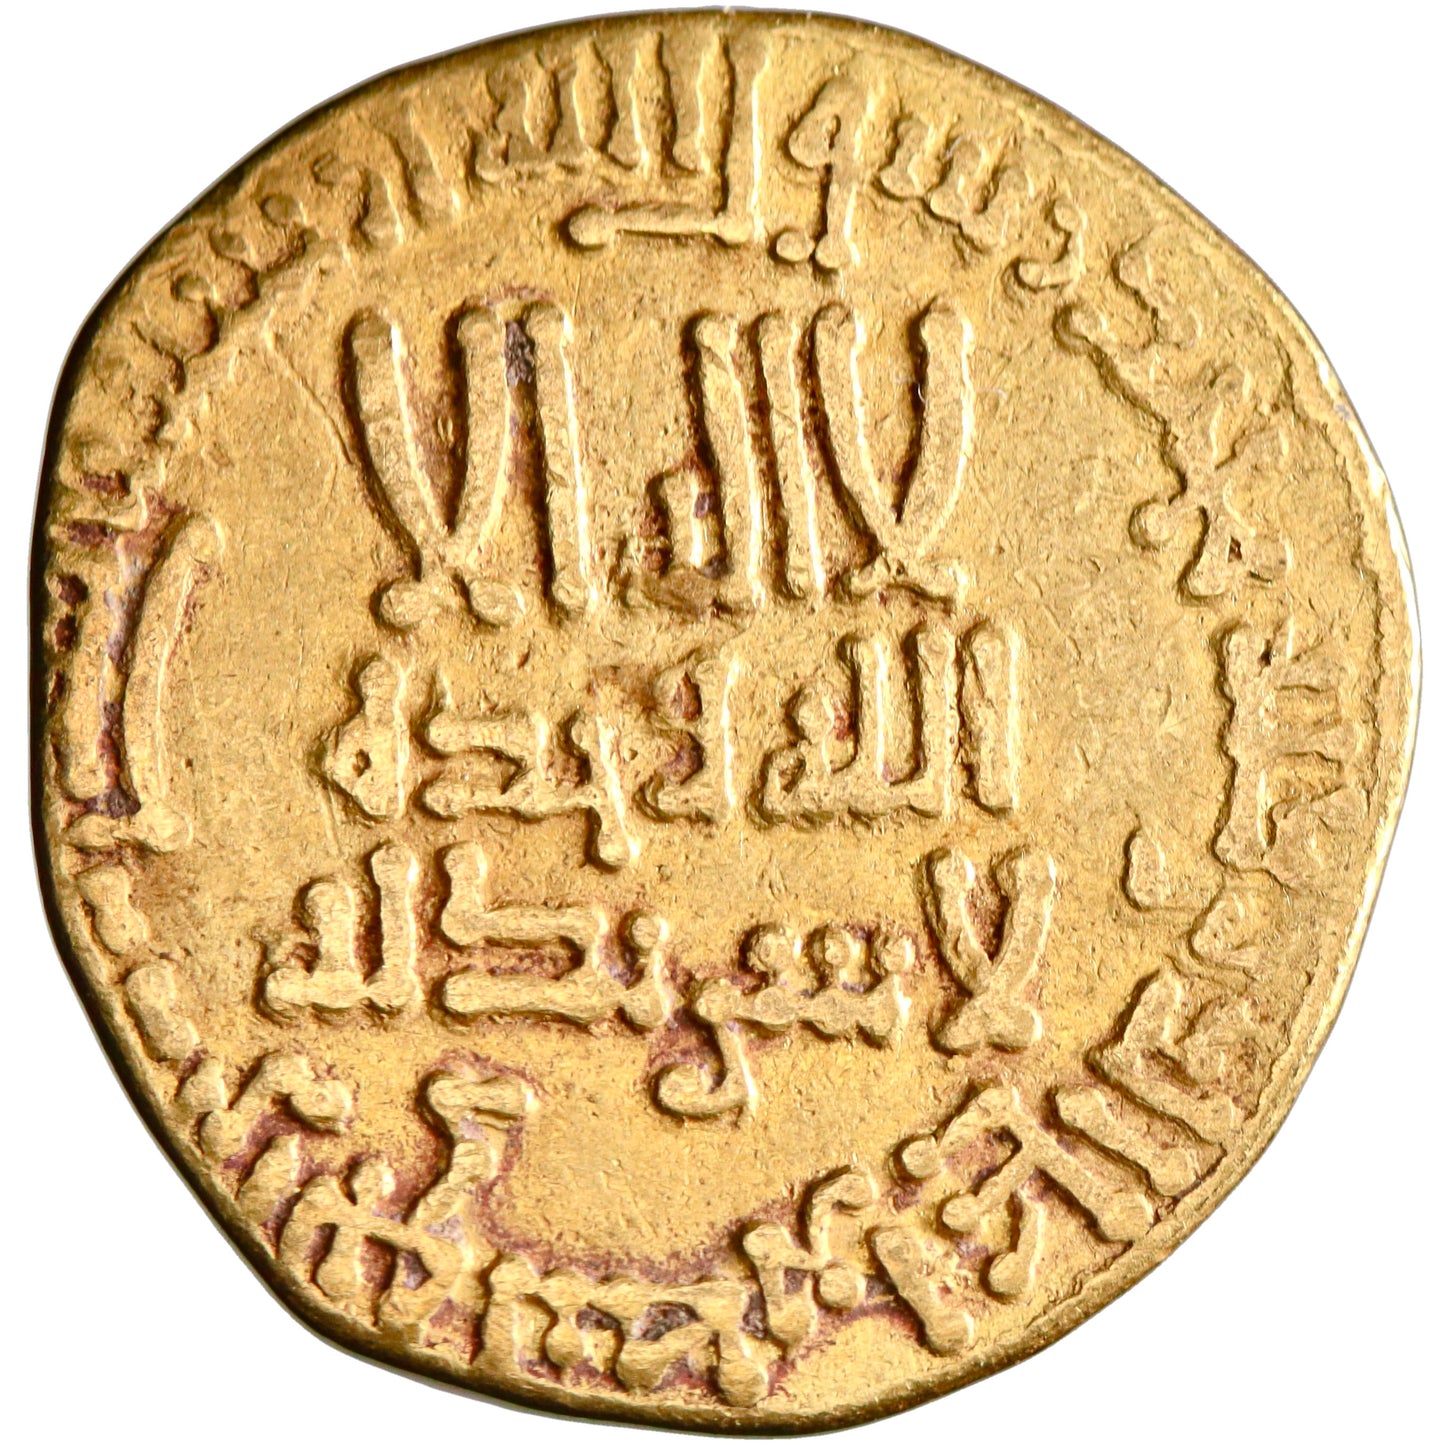 Abbasid, al-Mansur, gold dinar, AH 155